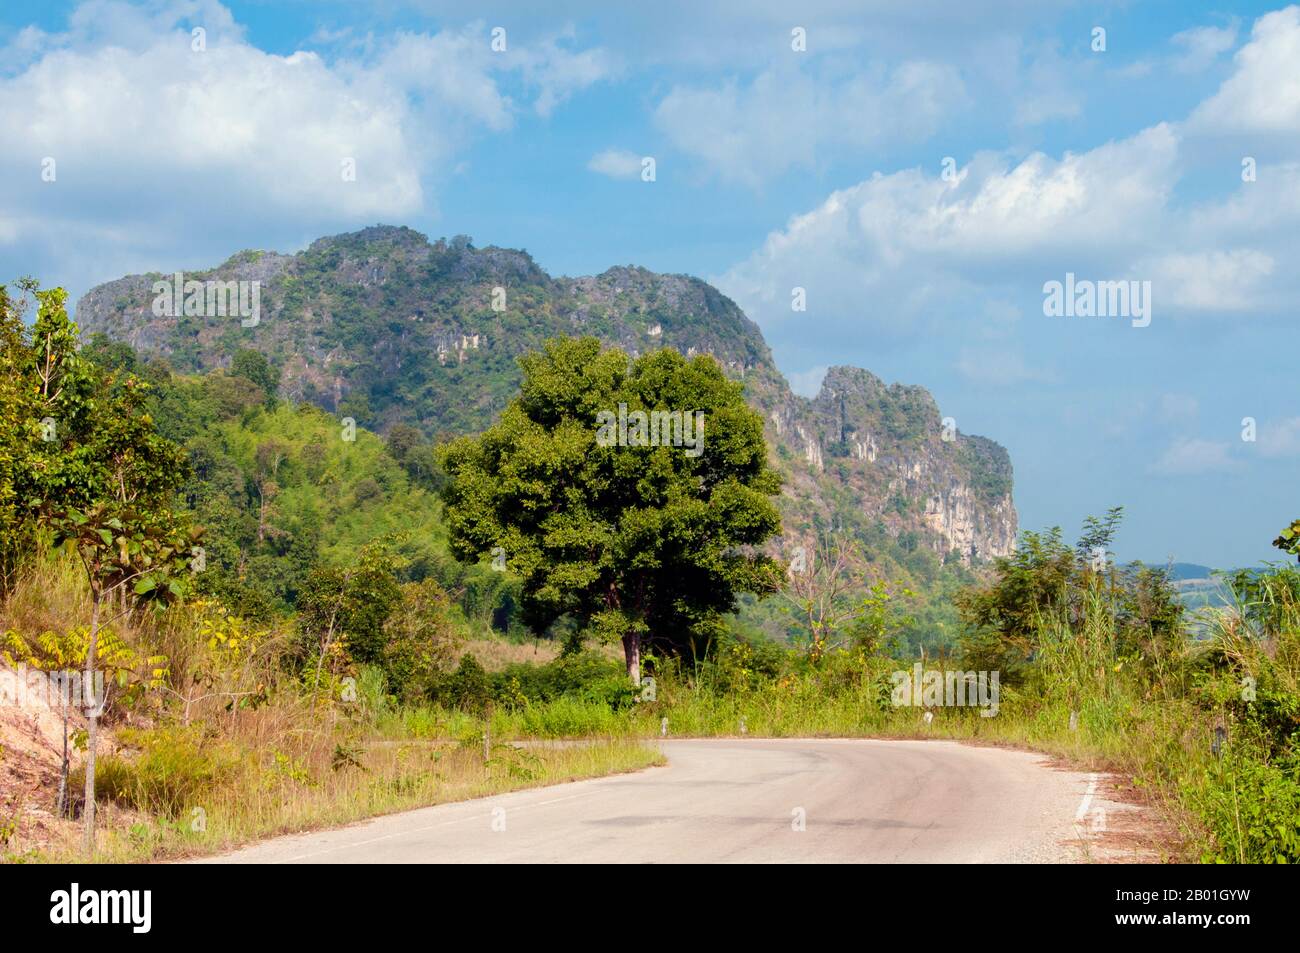 Thailand: Nationalpark Kuan Pha Lom, Provinz Loei. Die Provinz Loei (Thai: เลย) befindet sich im oberen Nordosten Thailands. Die benachbarten Provinzen sind (von Osten nach rechts) Nong Khai, Udon Thani, Nongbua Lamphu, Khon Kaen, Phetchabun, Phitsanulok. Im Norden grenzt sie an die Provinzen Xaignabouli und Vientiane in Laos. Die Provinz ist von niedrigen Bergen bedeckt, während die Hauptstadt Loei in einem fruchtbaren Becken liegt. Der Fluss Loei, der durch die Provinz fließt, ist ein Nebenfluss des Mekong, der zusammen mit dem kleineren Fluss Hueang die nördliche Grenze der Provinz zu Laos bildet. Stockfoto